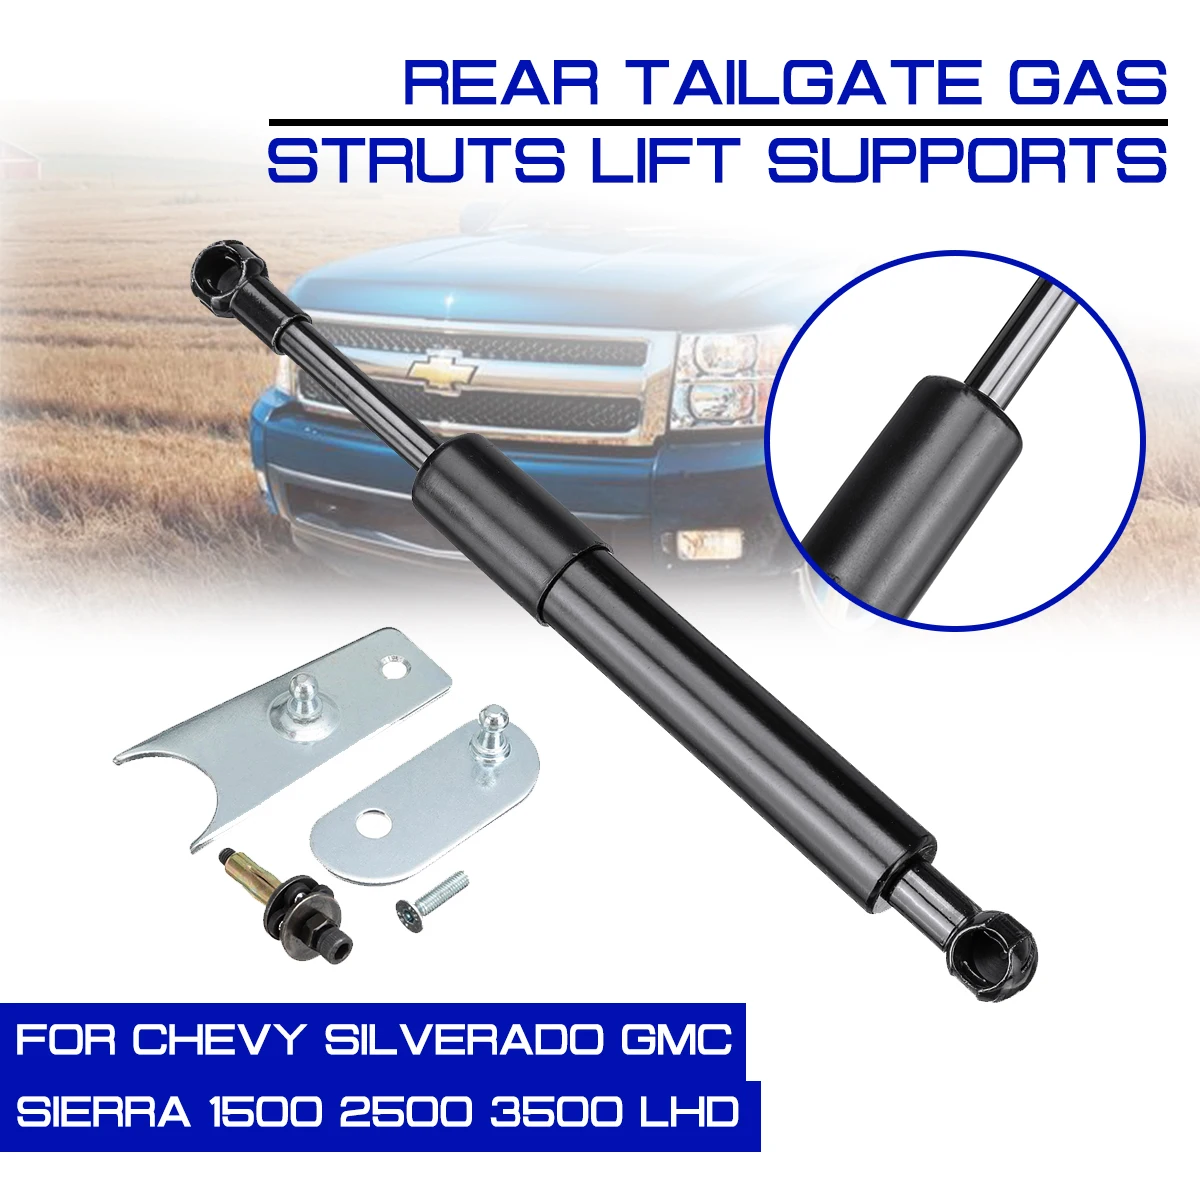 

Rear Trunk Support Hydraulic Rod For Chevy Silverado GMC Sierra 1500 2500 3500 LHD Strut Spring Bars Shock Bracket